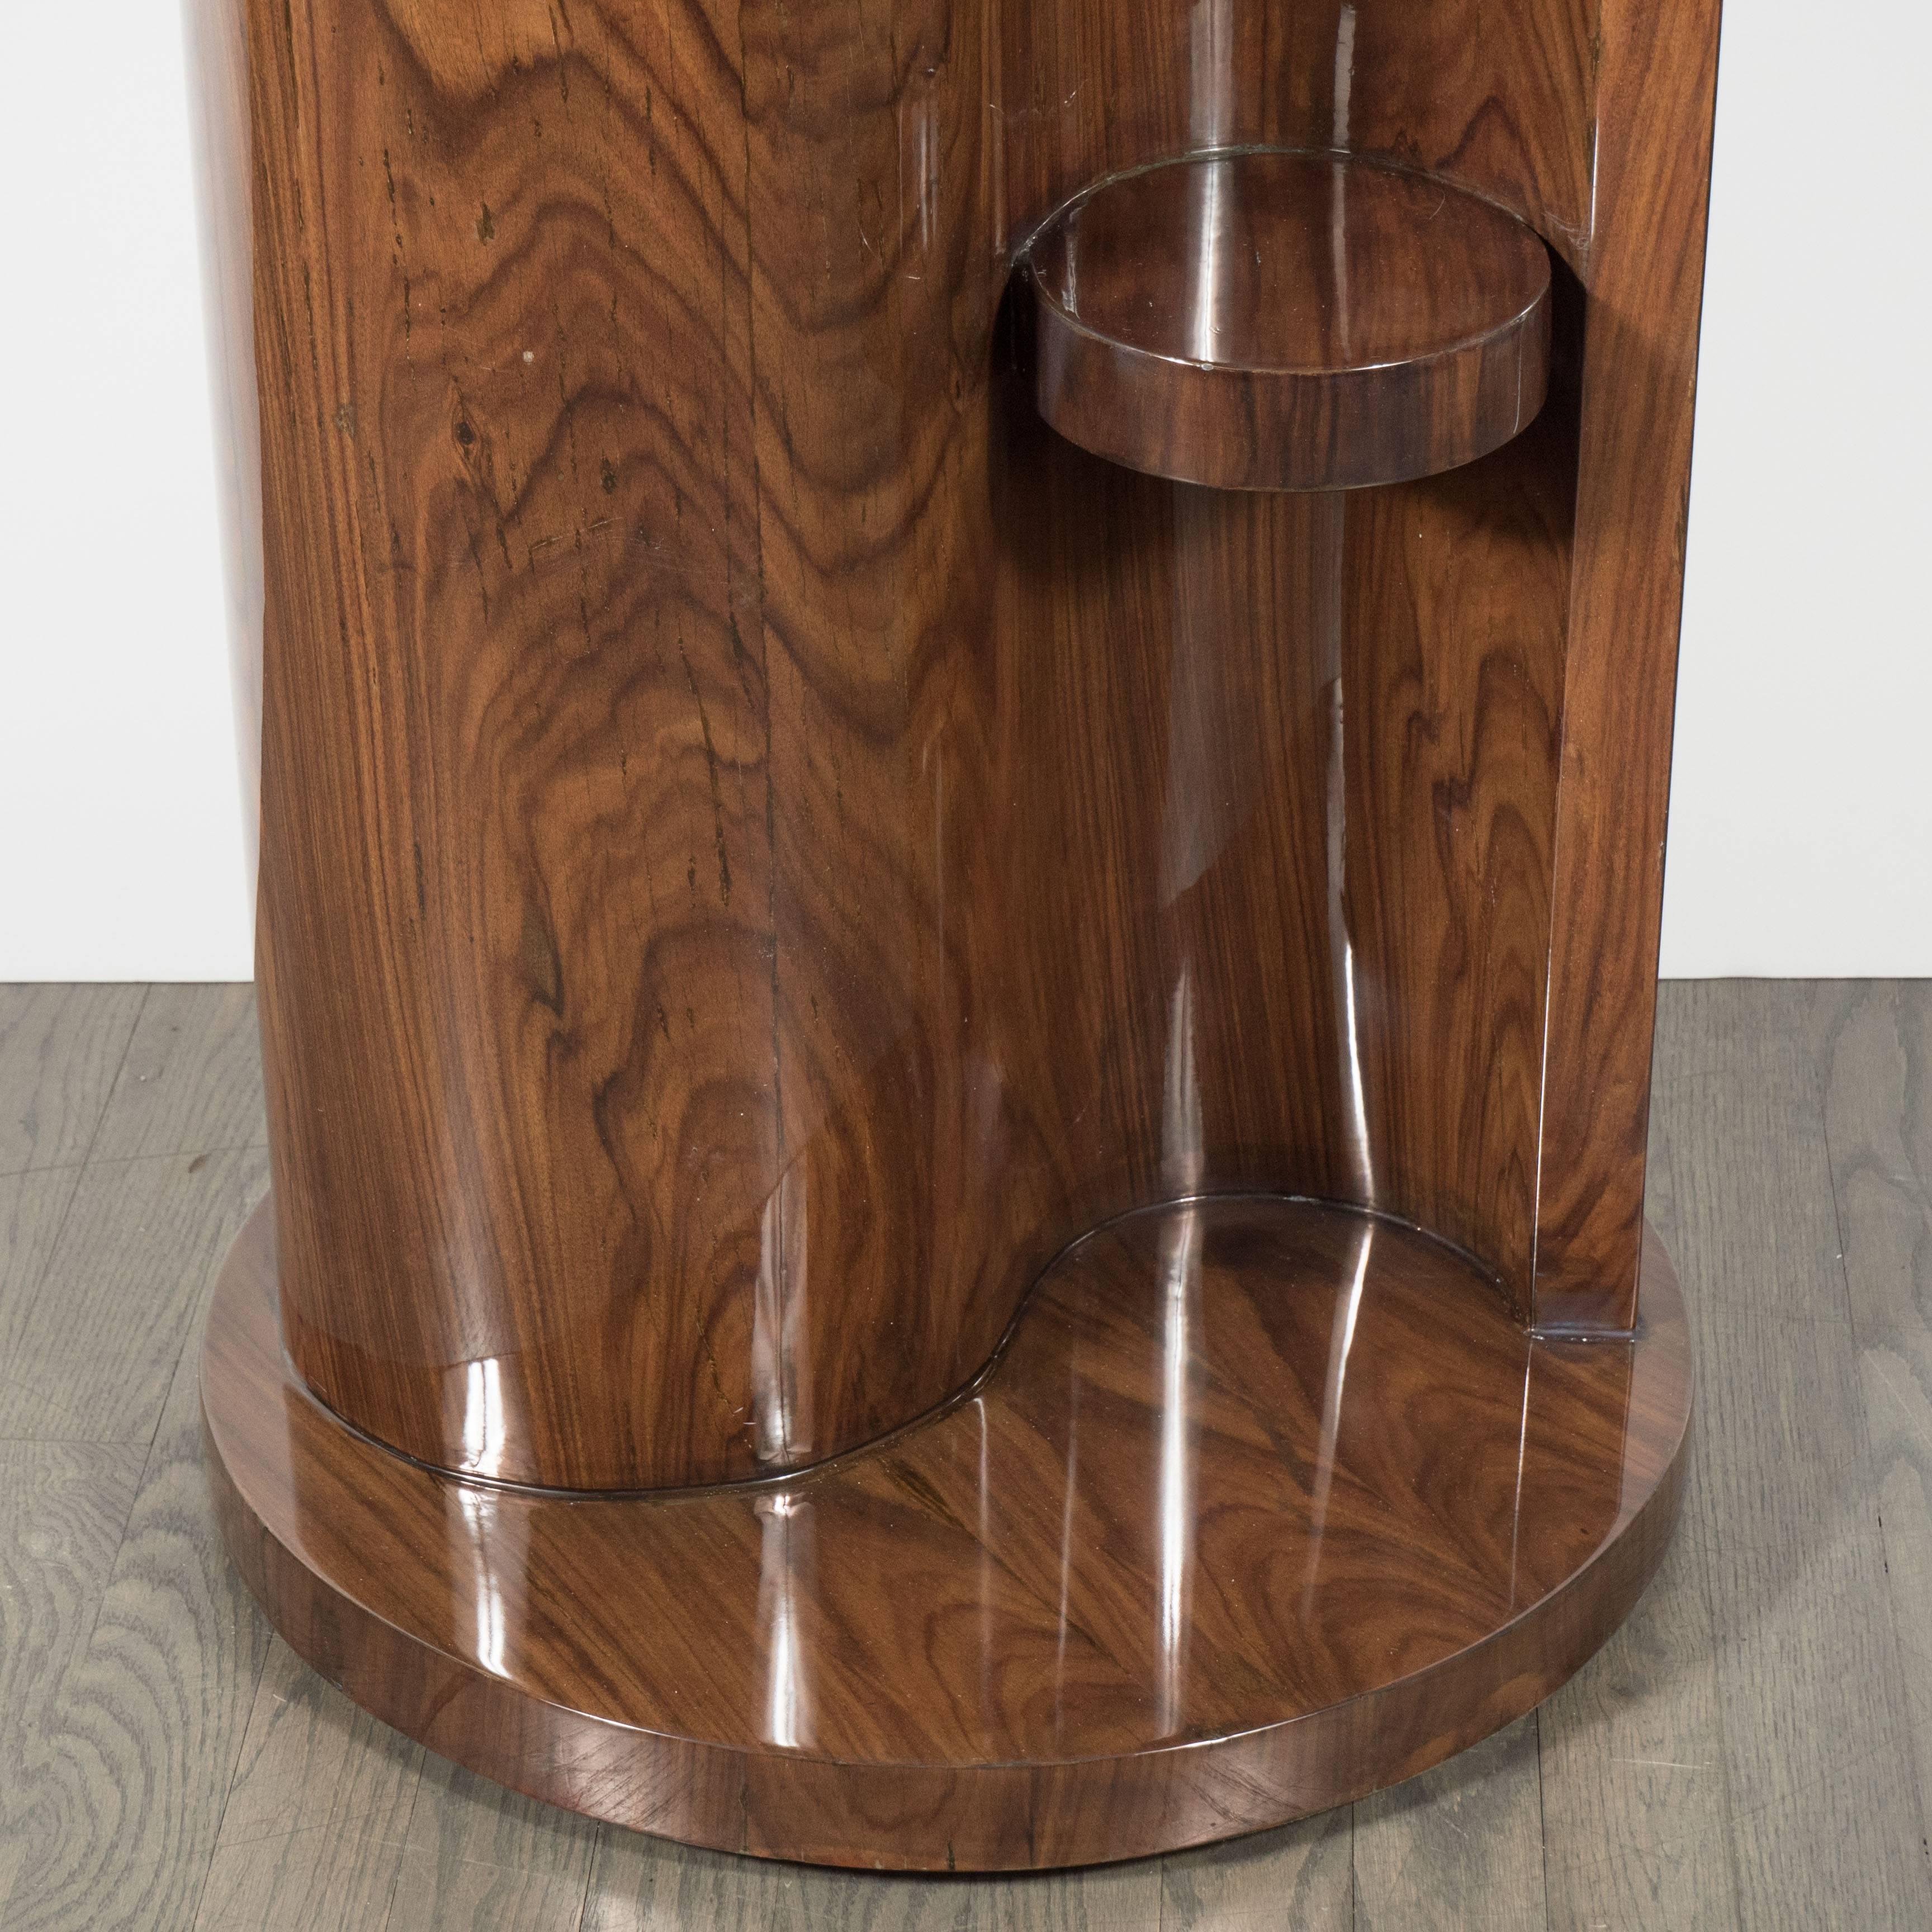 Dieser atemberaubende Art-Déco-Beistelltisch/-Sockel aus gemasertem Nussbaum wurde um 1935 in Frankreich gefertigt. Der runde Sockel aus Nussbaumholz trägt einen S-förmigen Korpus, der aus zwei nahtlos aneinandergereihten, stromlinienförmigen Formen